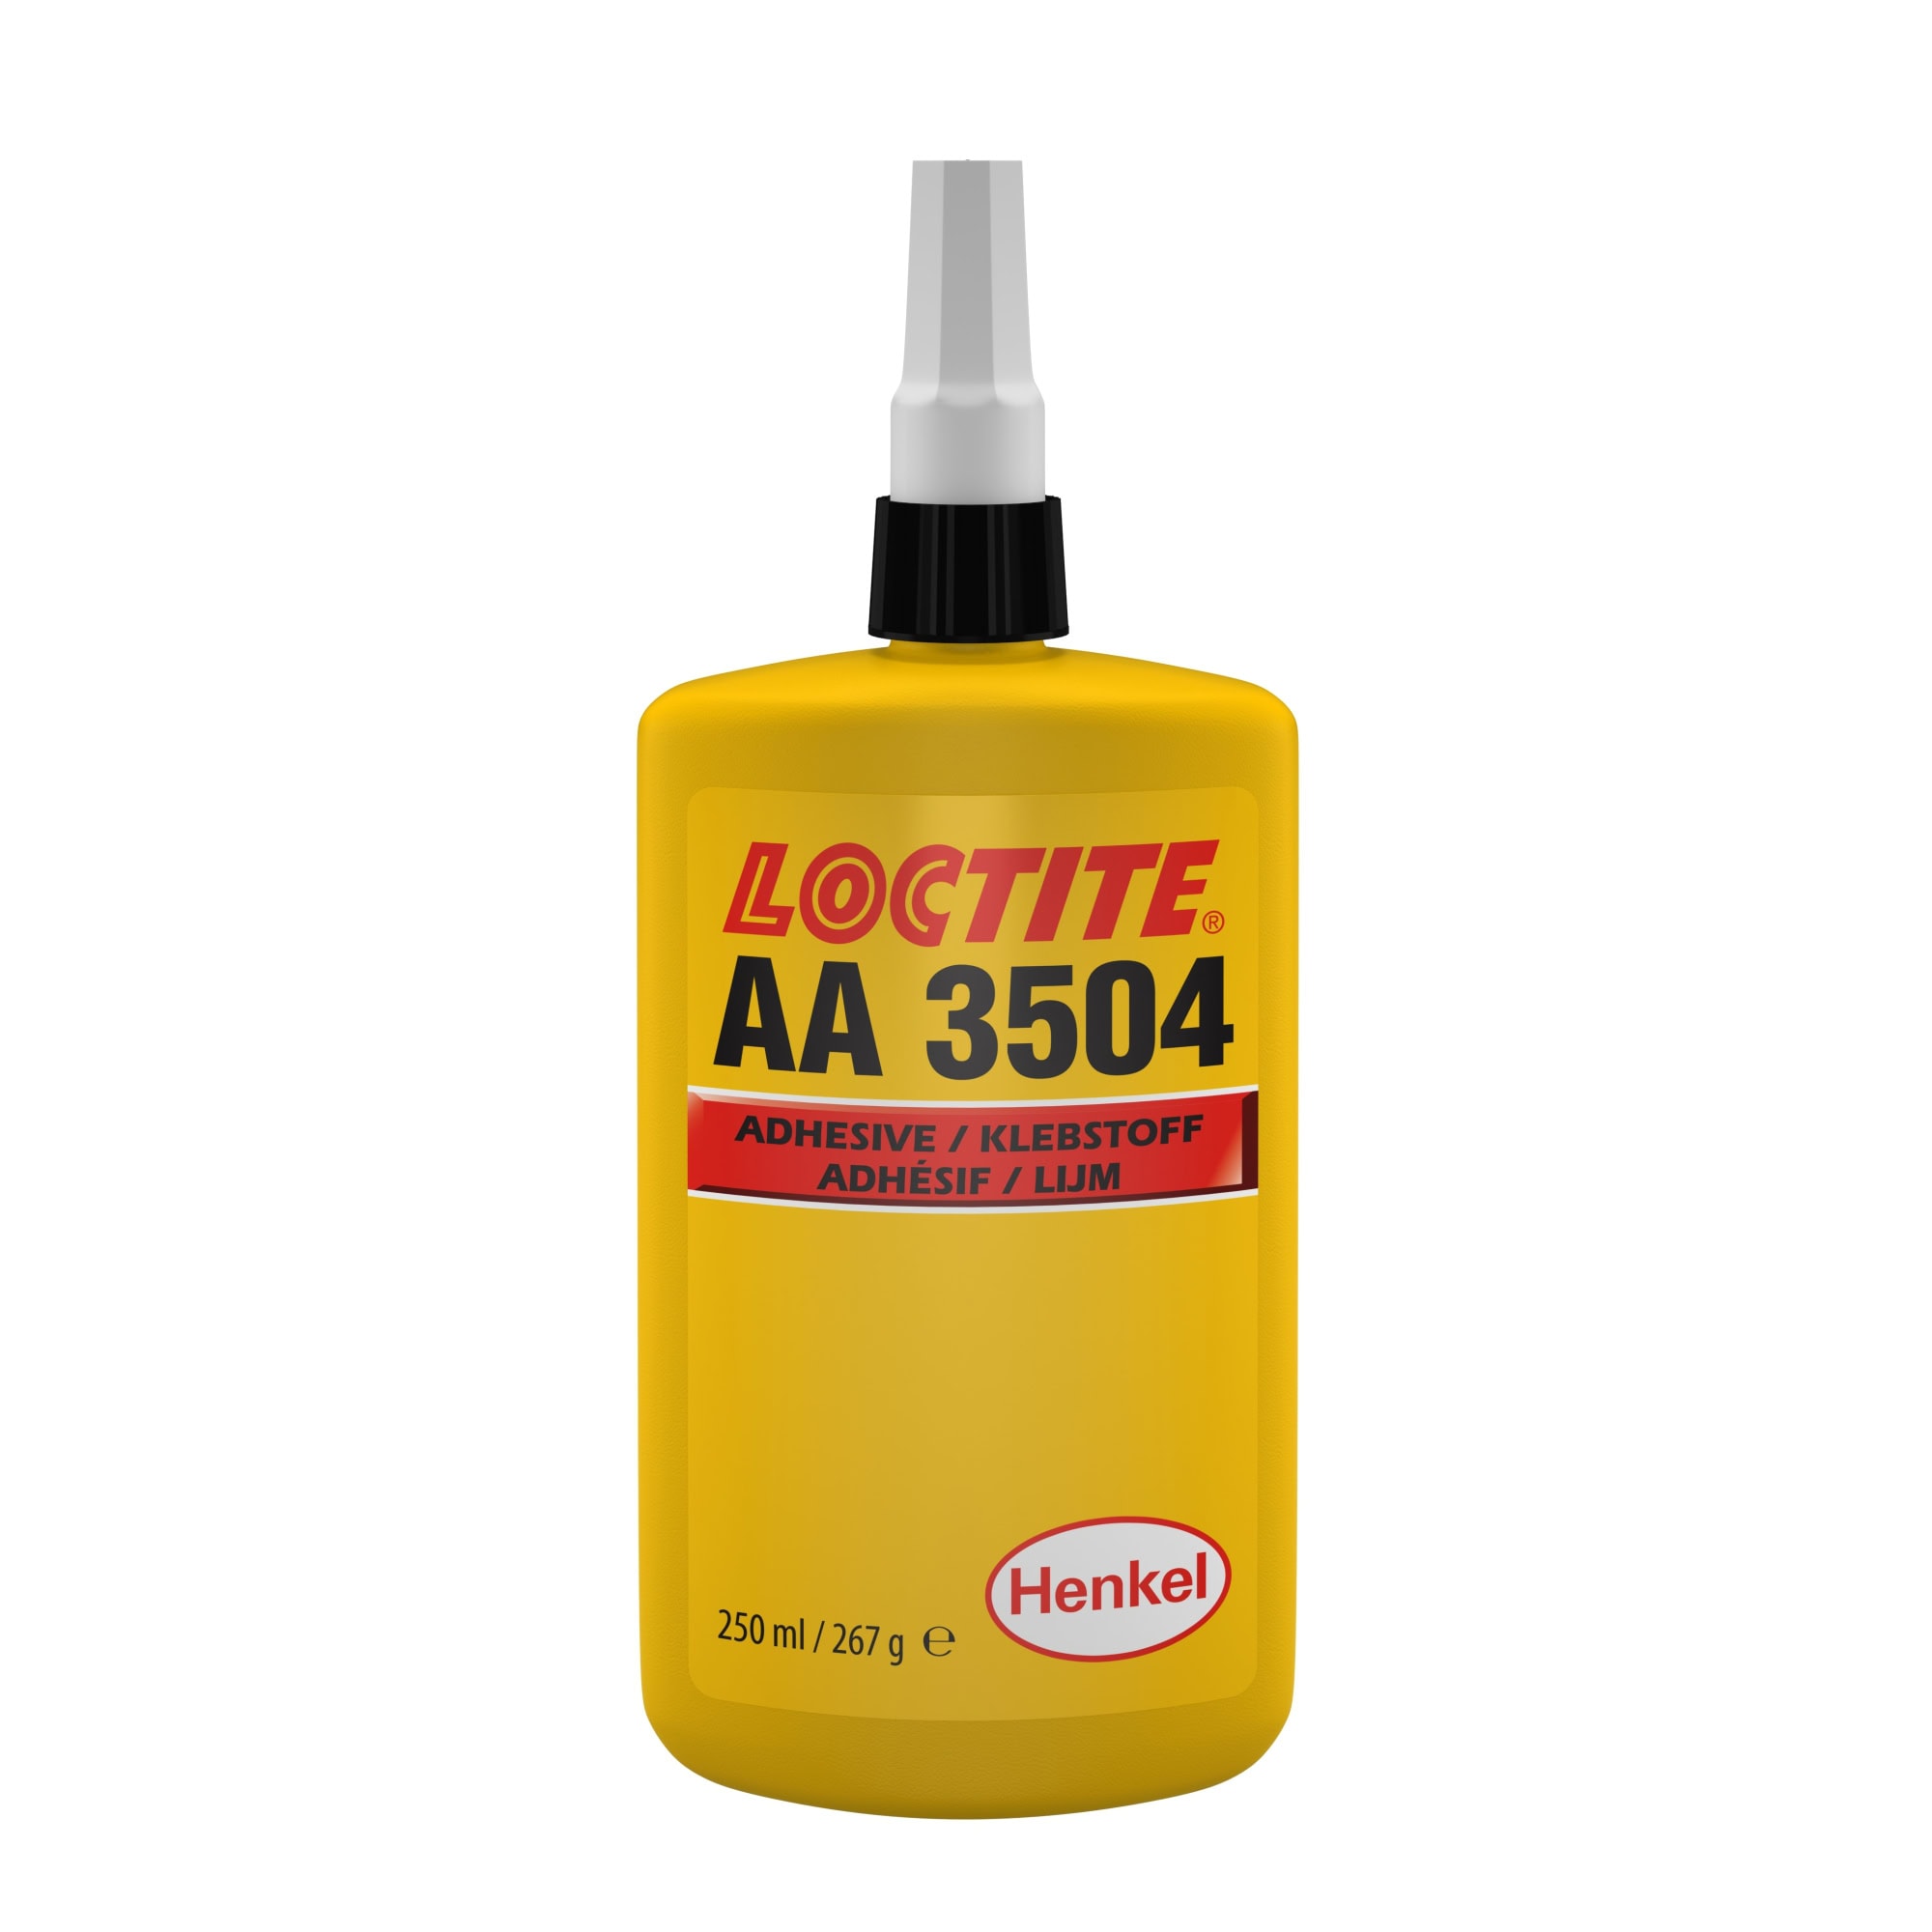 Henkel™ Loctite® Acrylat Klebstoff AA 3504, 250 ml, Bernsteinfarben, Flüssig, 1K, 195539, Für Ferritklebungen